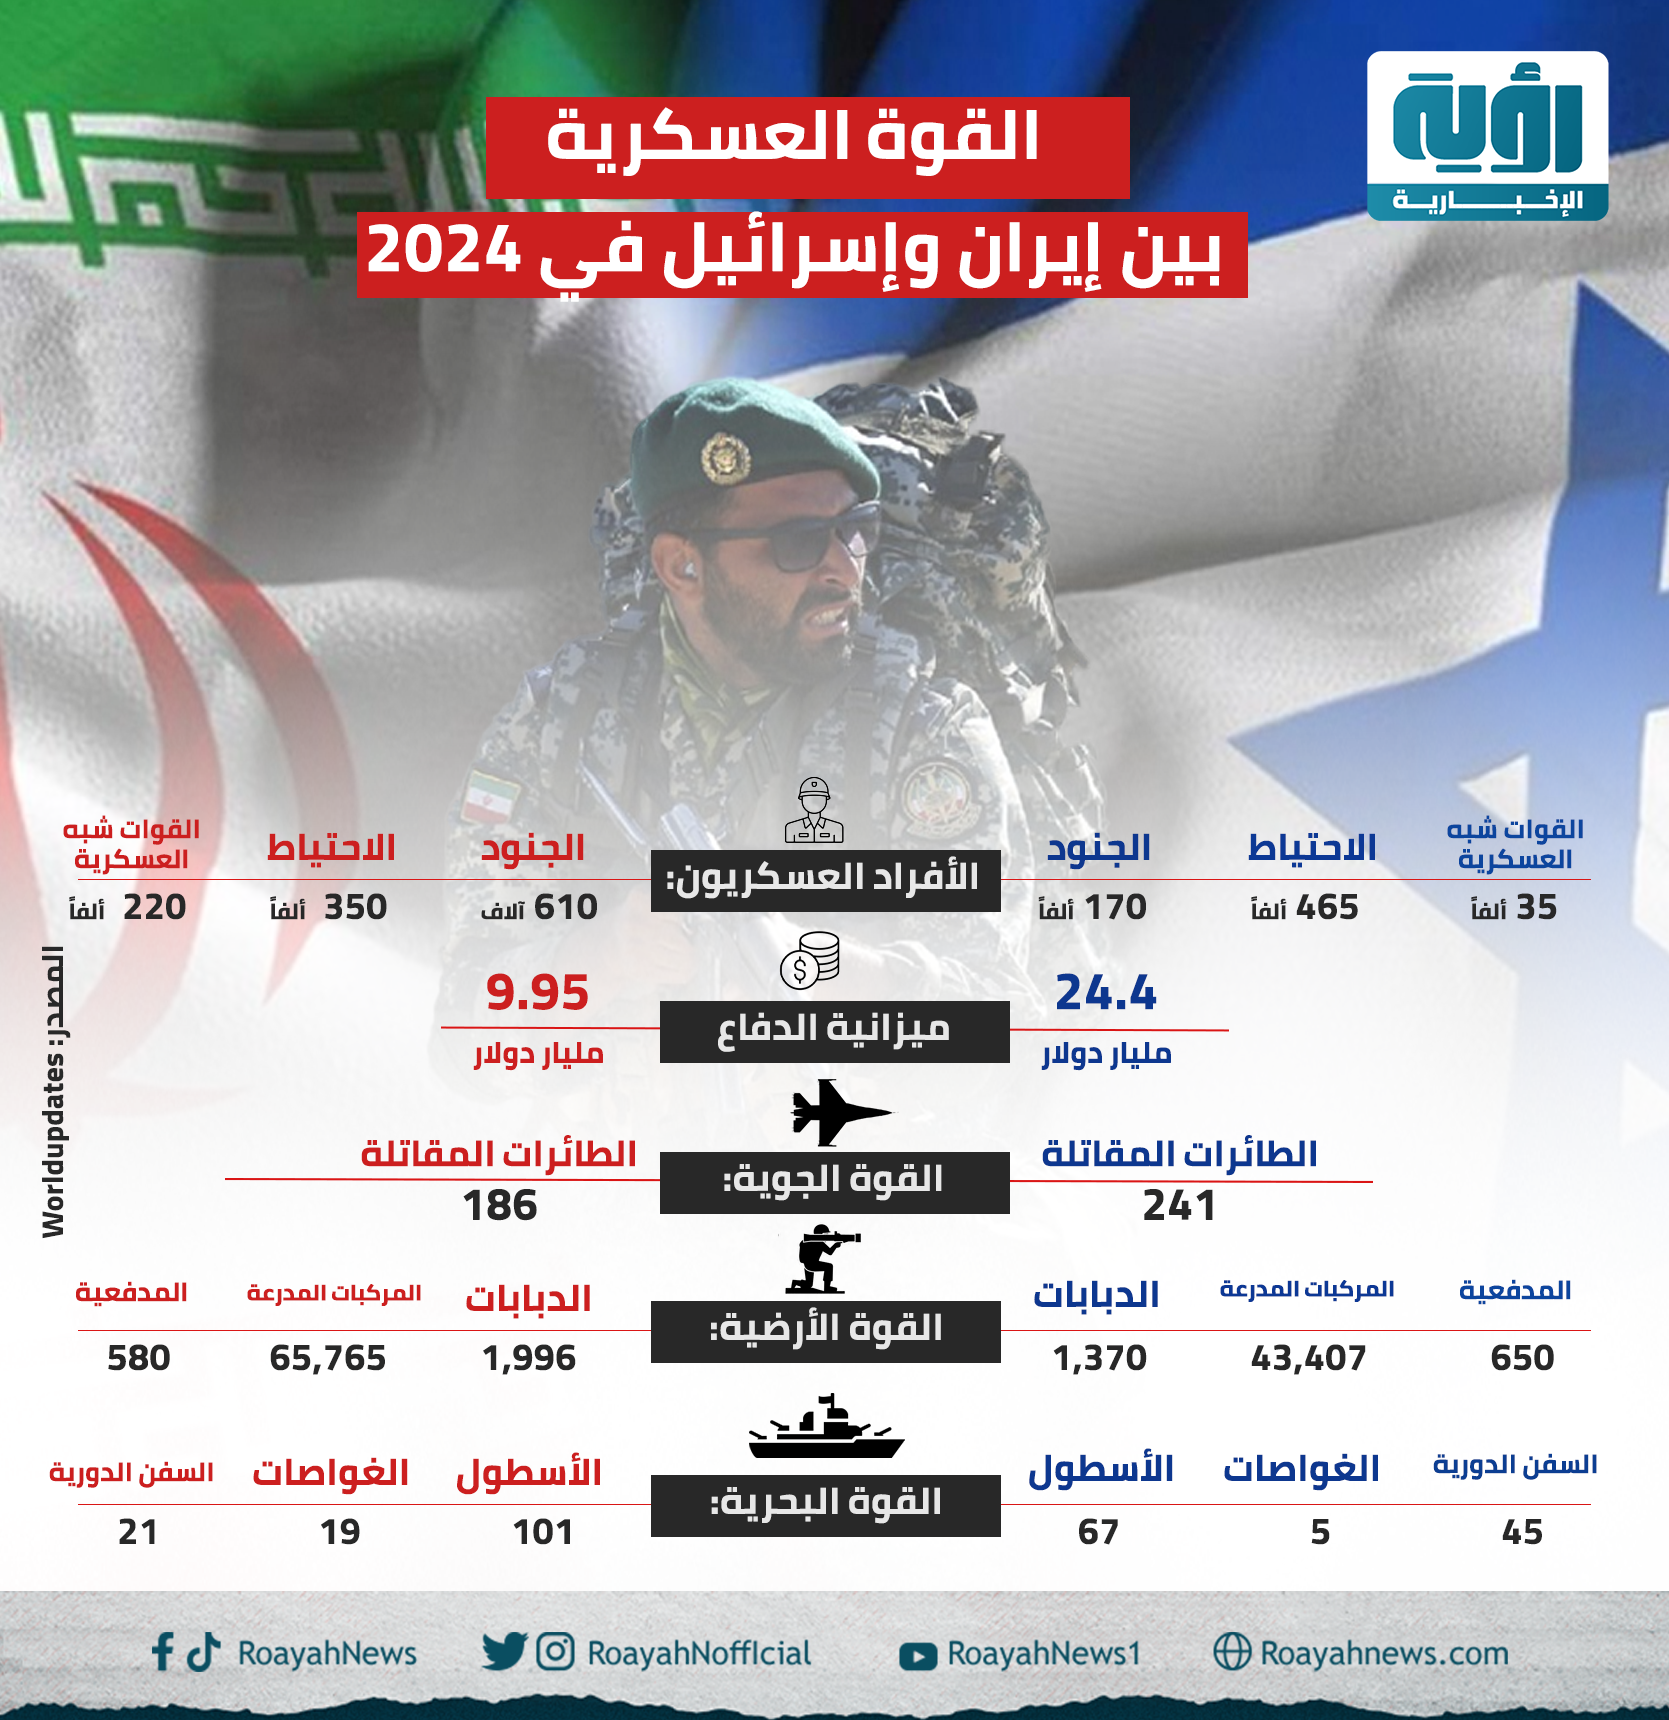 القوة العسكرية بين إيران وإسرائيل في 2024 1